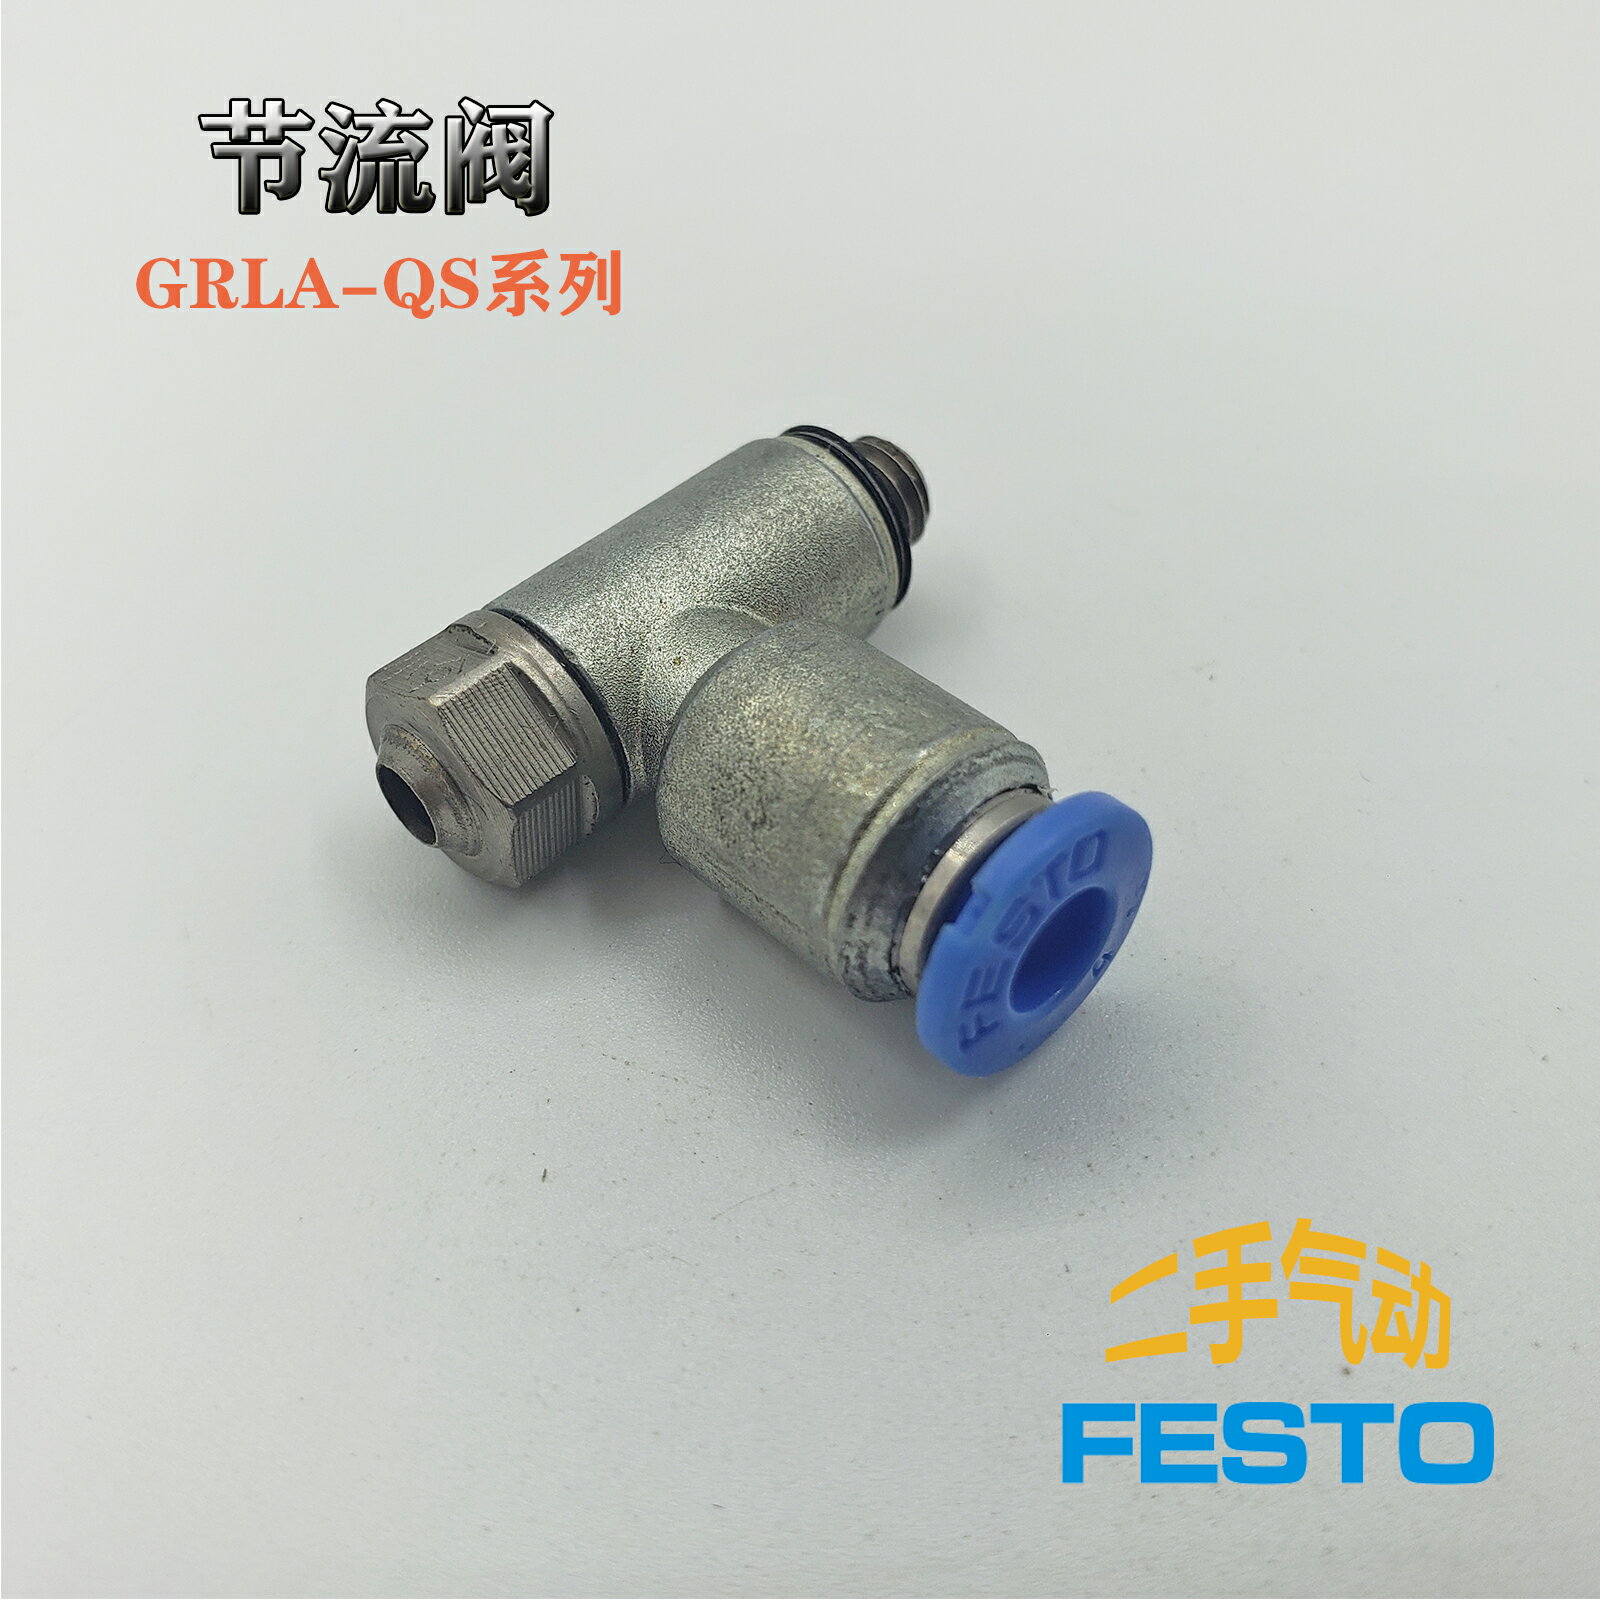 二手費斯托FESTO原裝金屬節流閥GRLA-M5-QS-4流量控制閥 螺釘調節